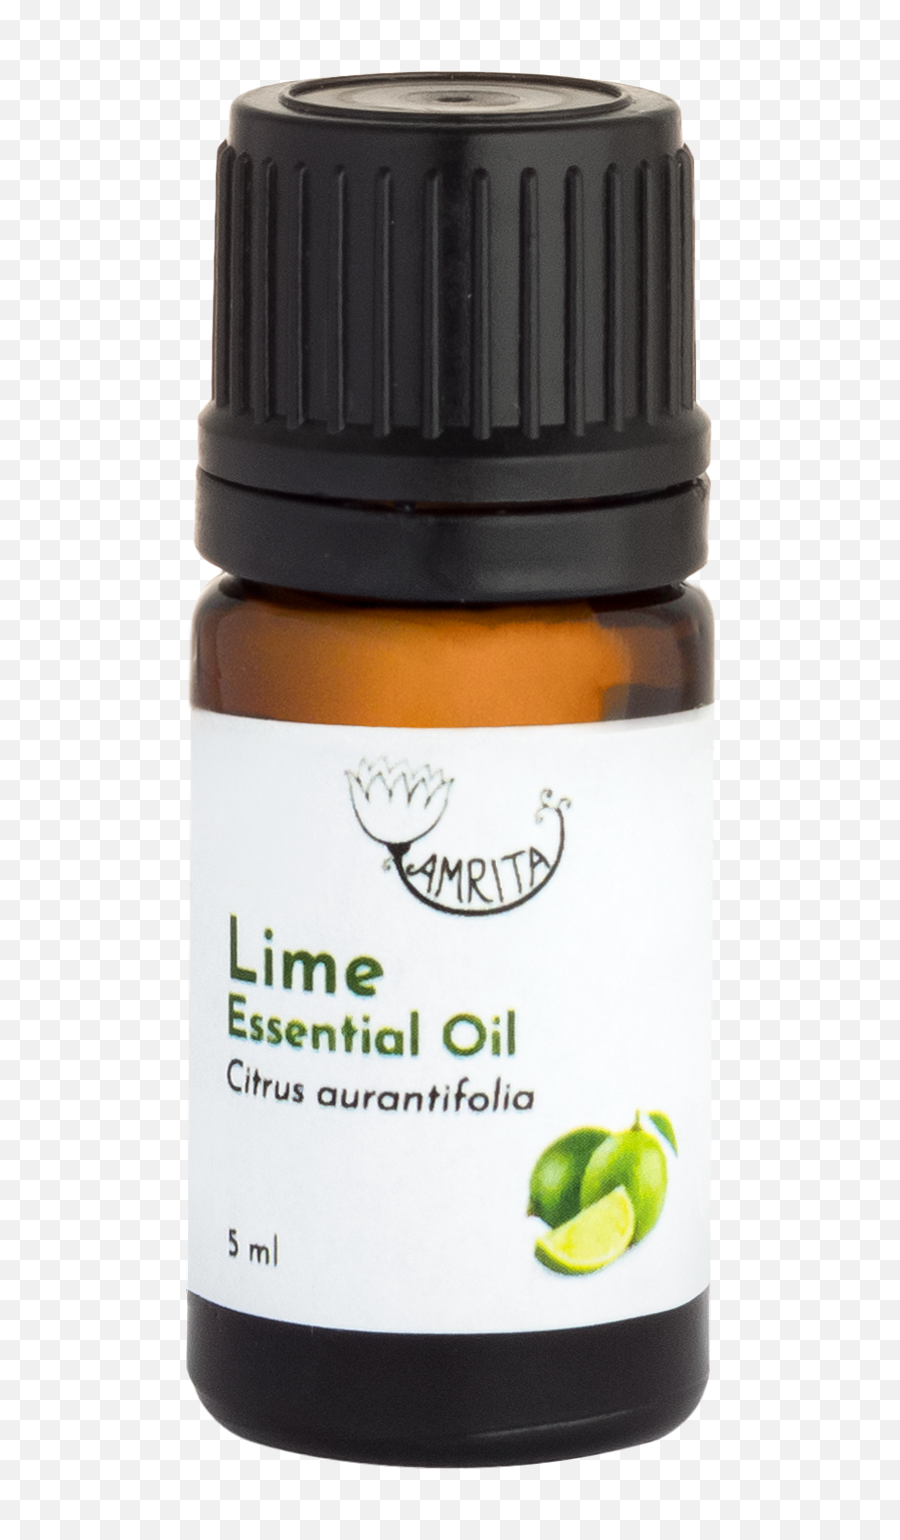 Lime Essential Oil Amrita 5 Ml - Ekoplanetlt Emoji,Emotion Produkcija